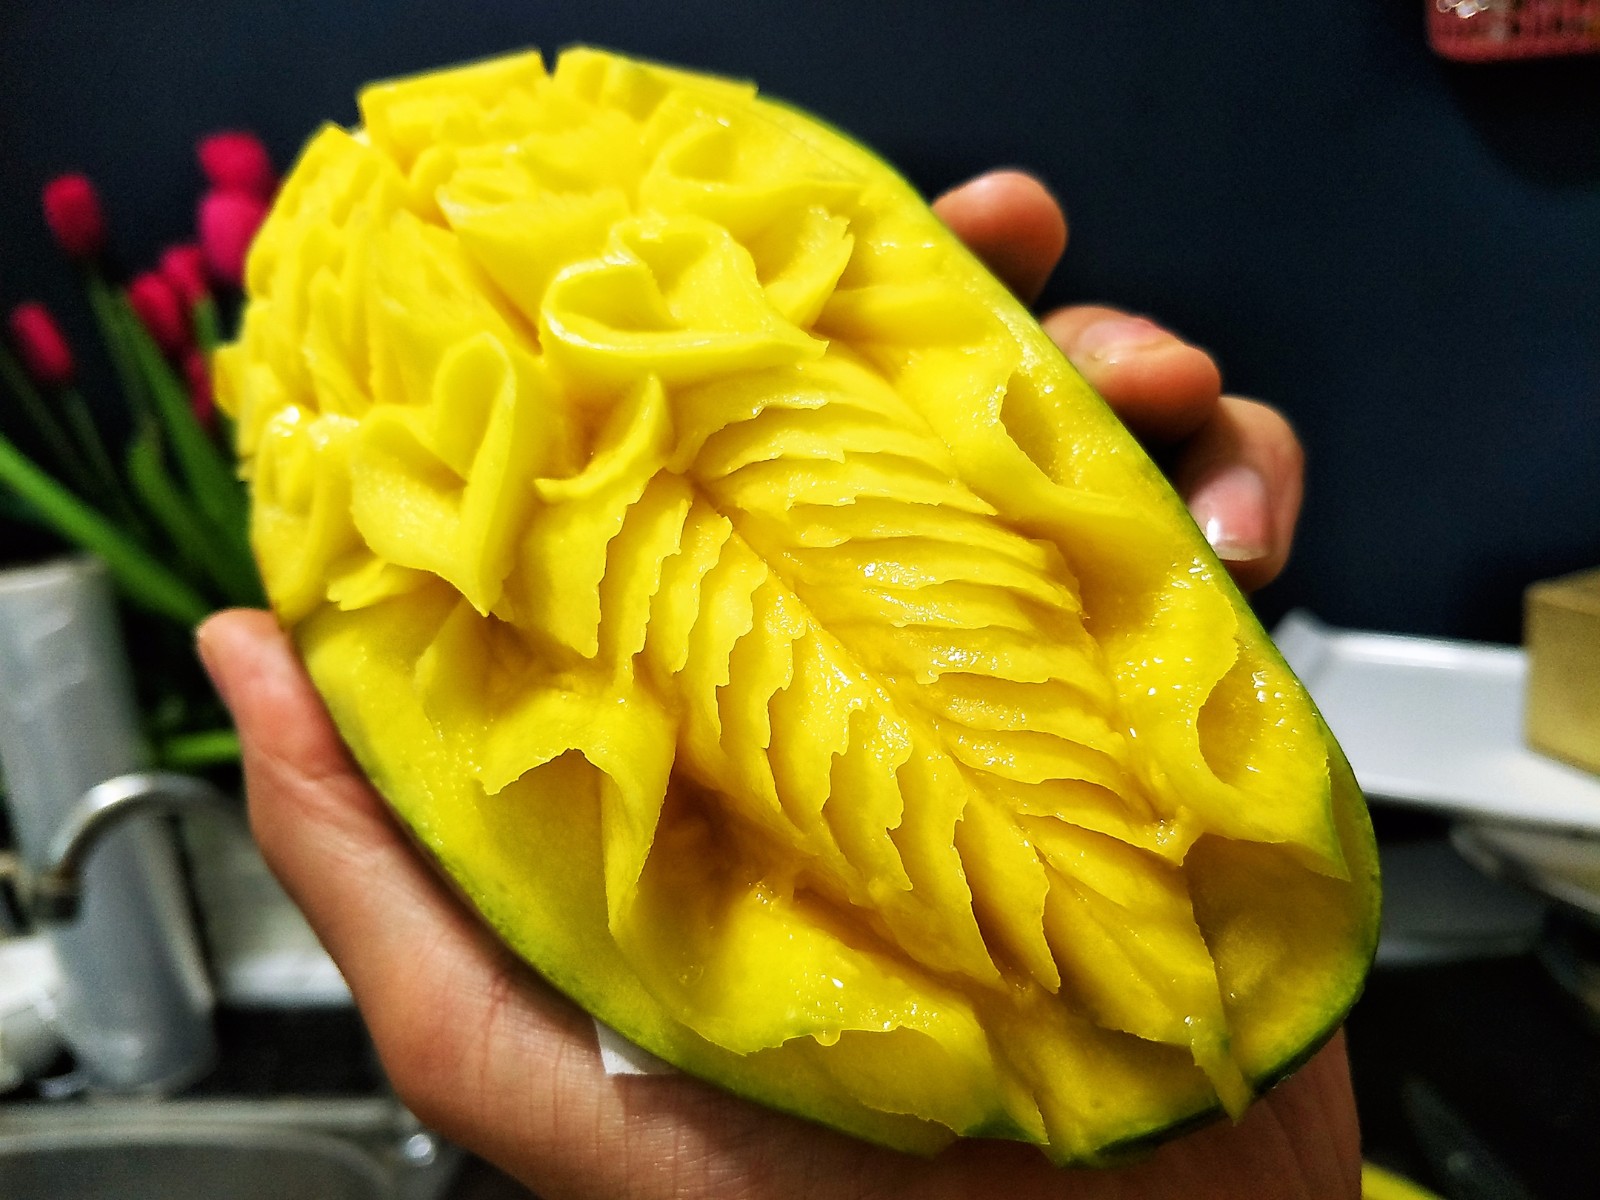 日本雕刻师用水果蔬菜雕刻的作品